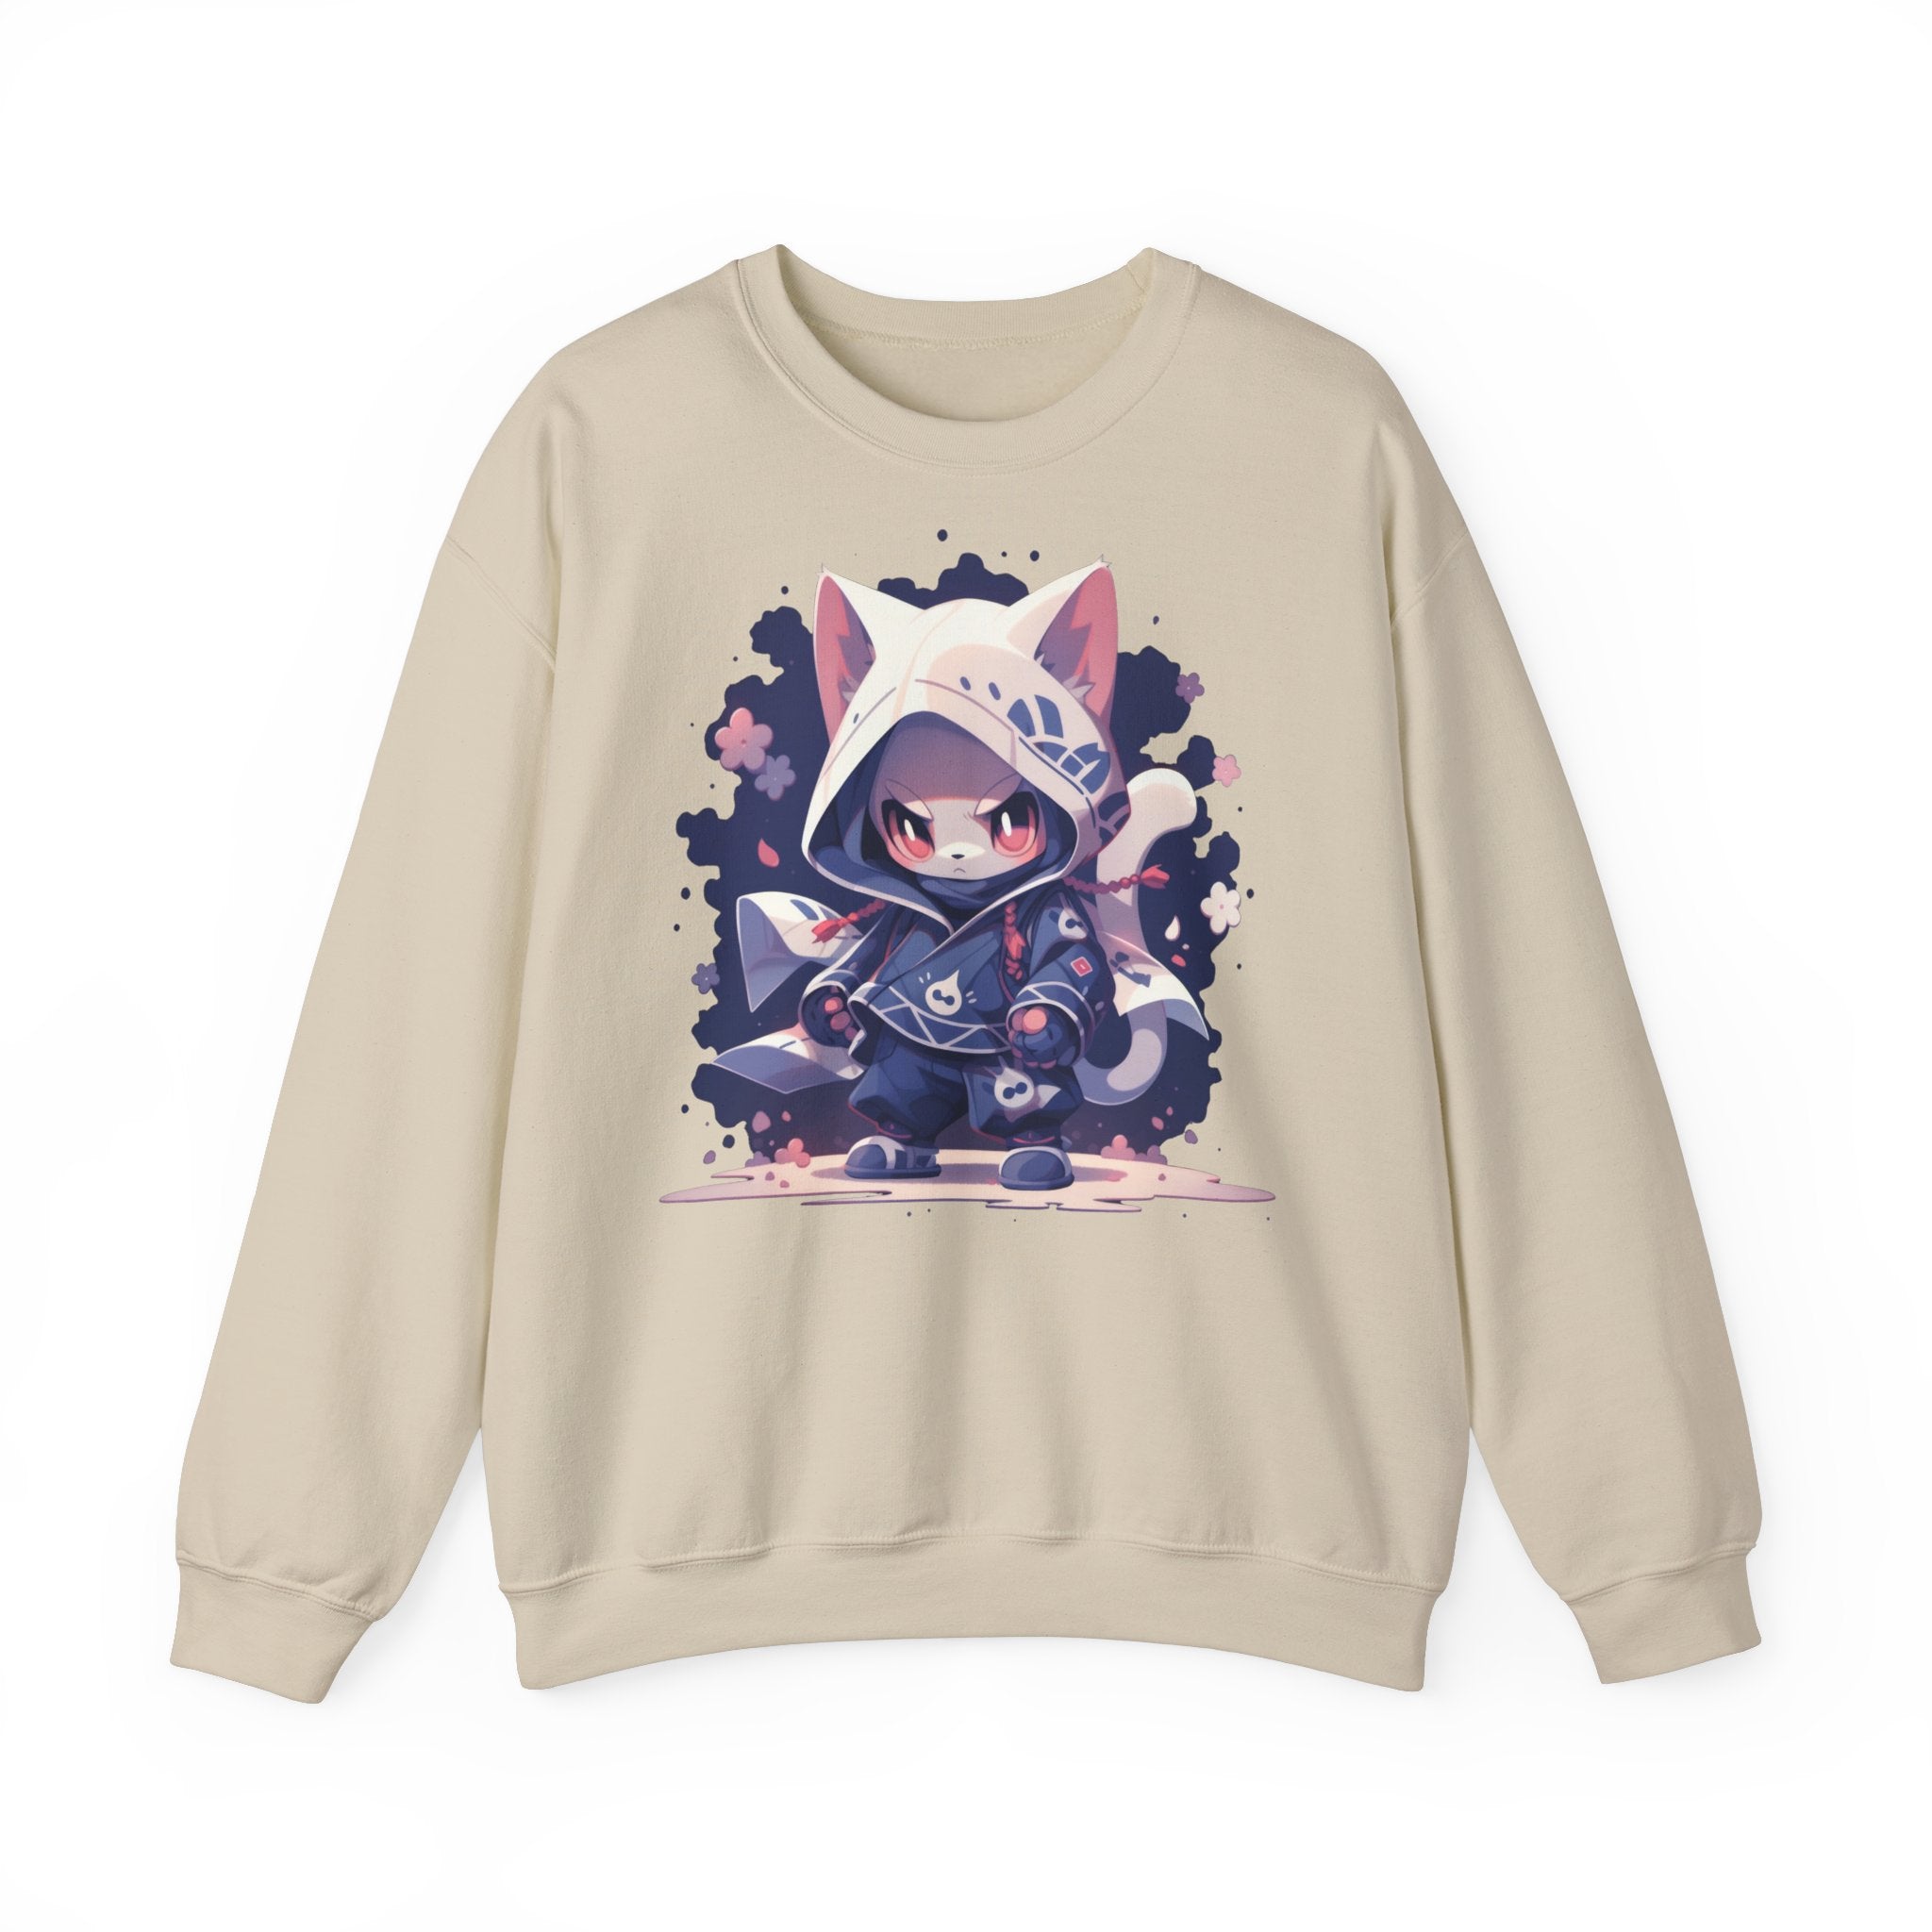 Cute Ninja Fox Sweatshirt - MiTo Store